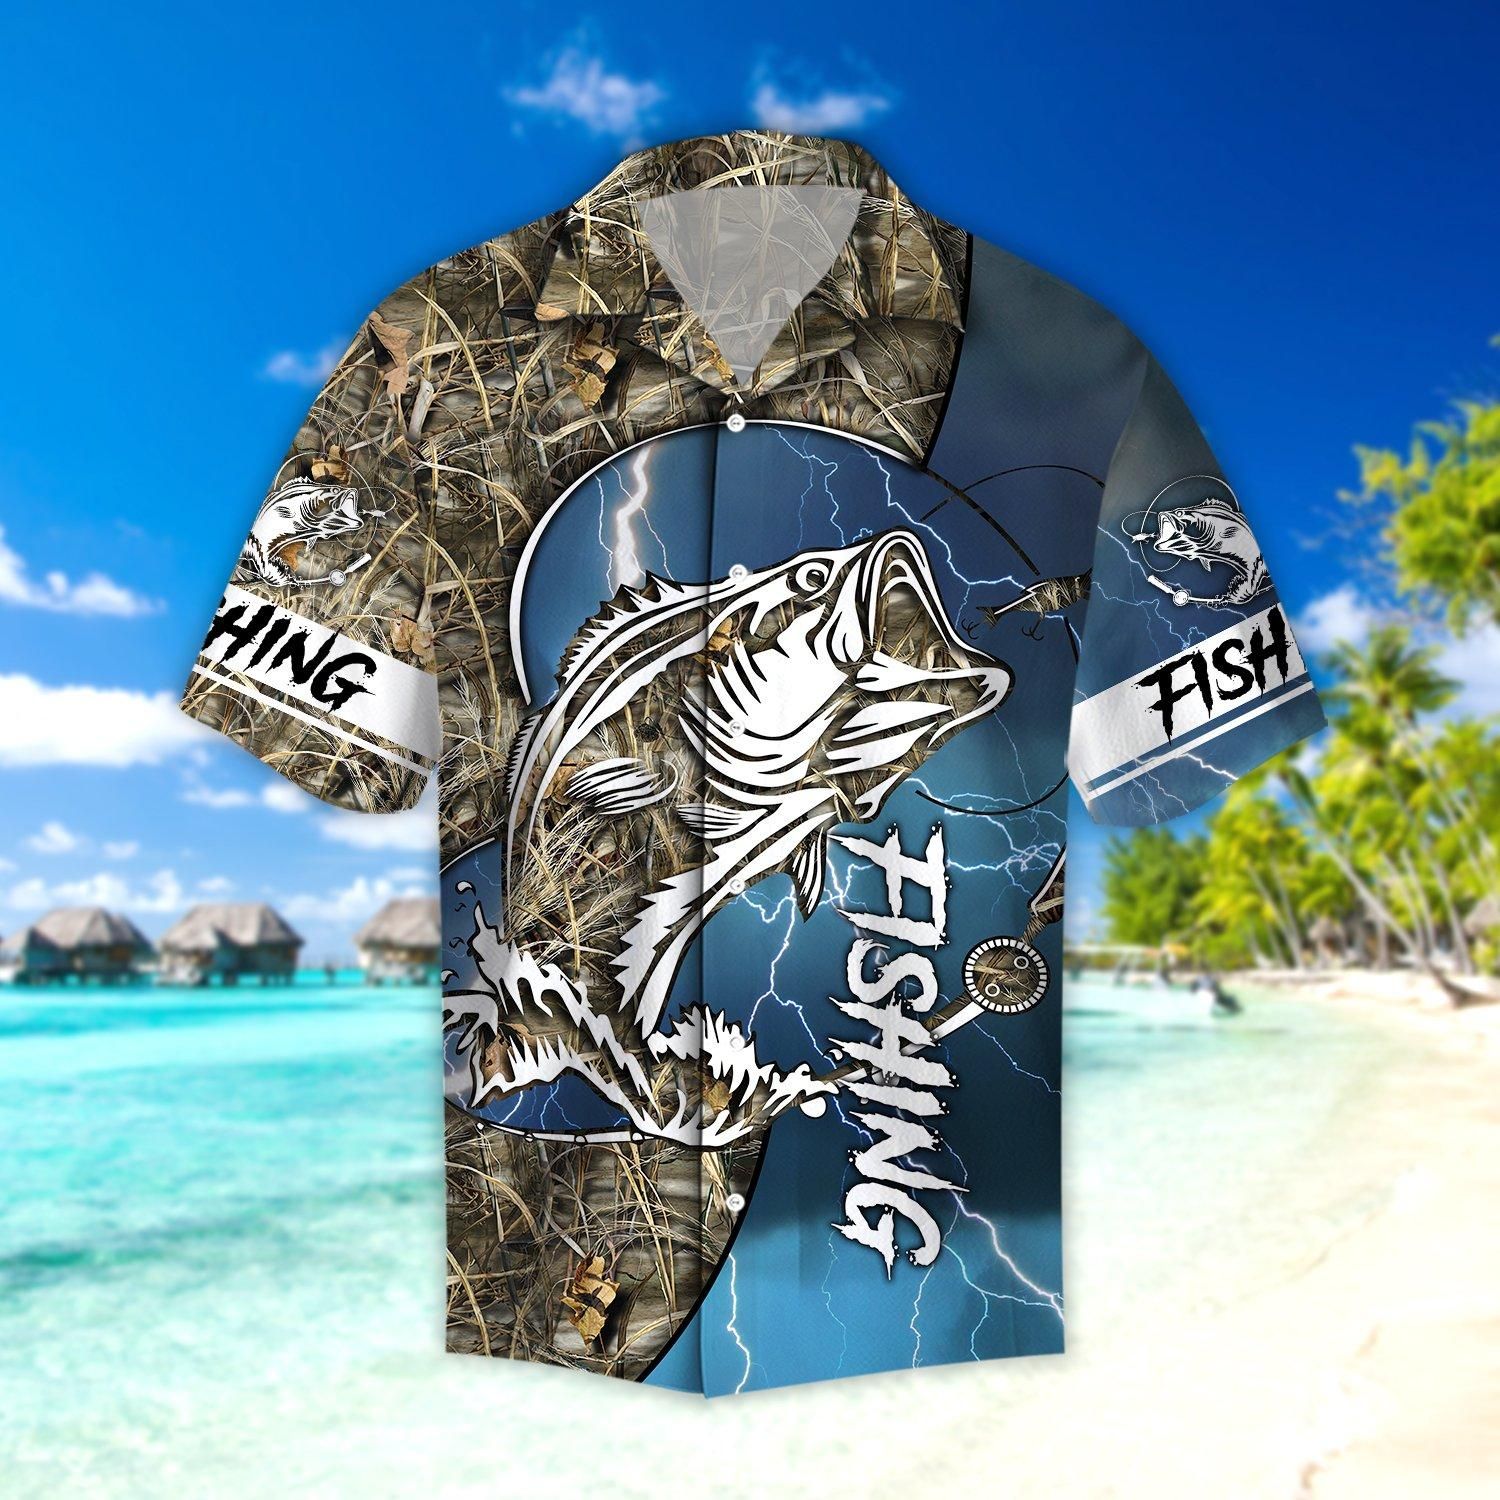 Bass fishing Sport - Blue version Hawaii Shirt TR2707201S-HC